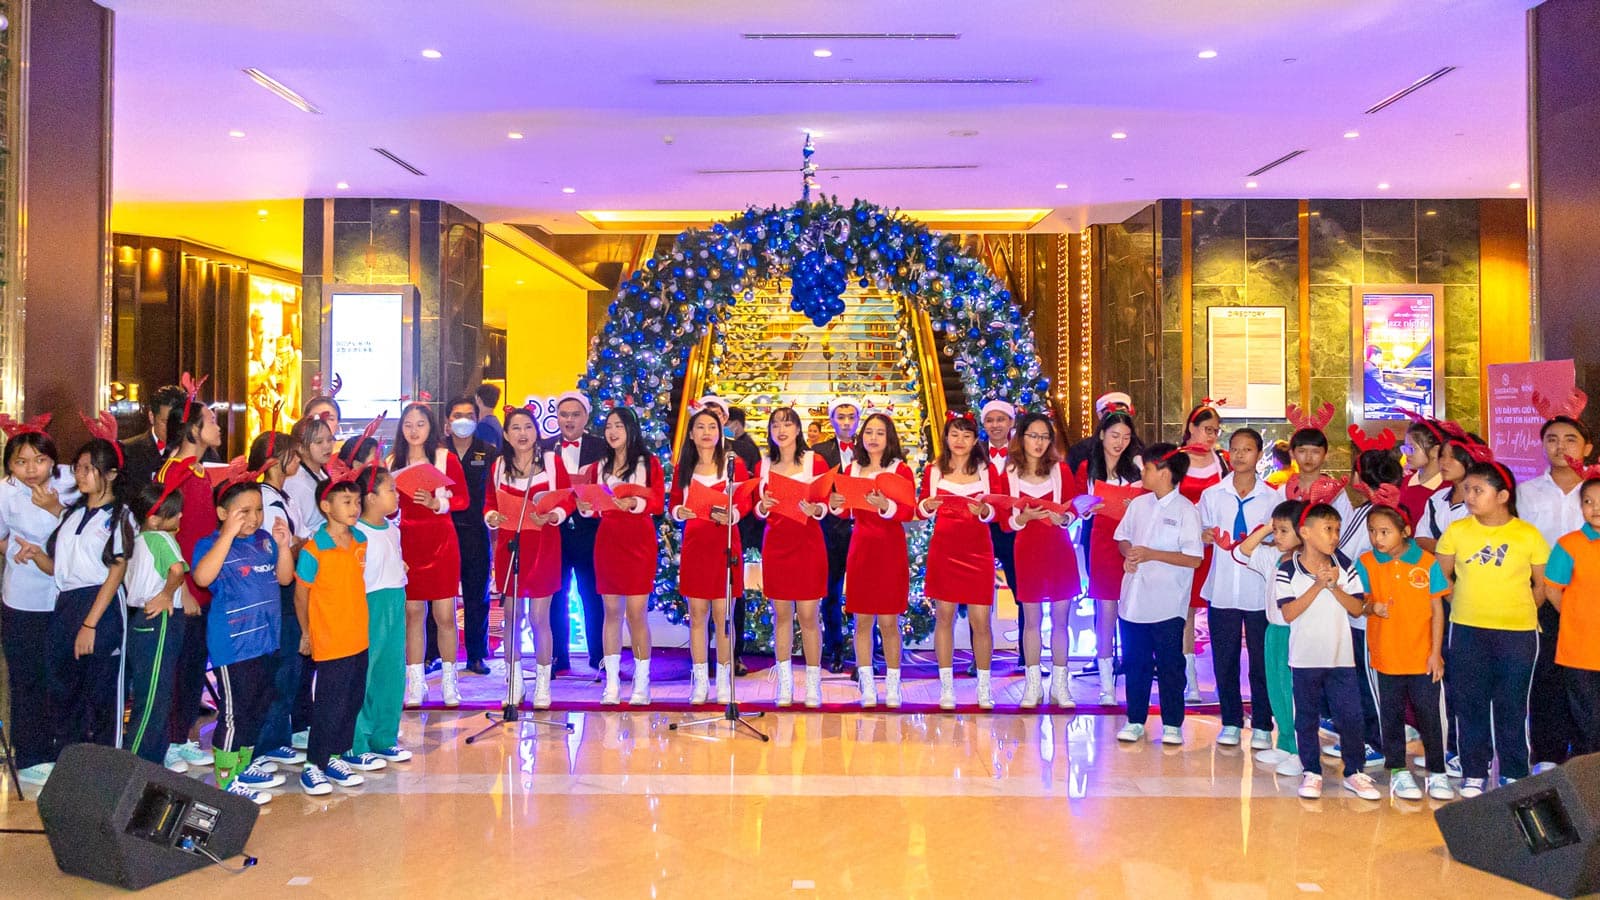 Lễ thắp sáng cây thông Giáng sinh 2022 cùng dự án Serve360 diễn ra tại khách sạn Sheraton Saigon